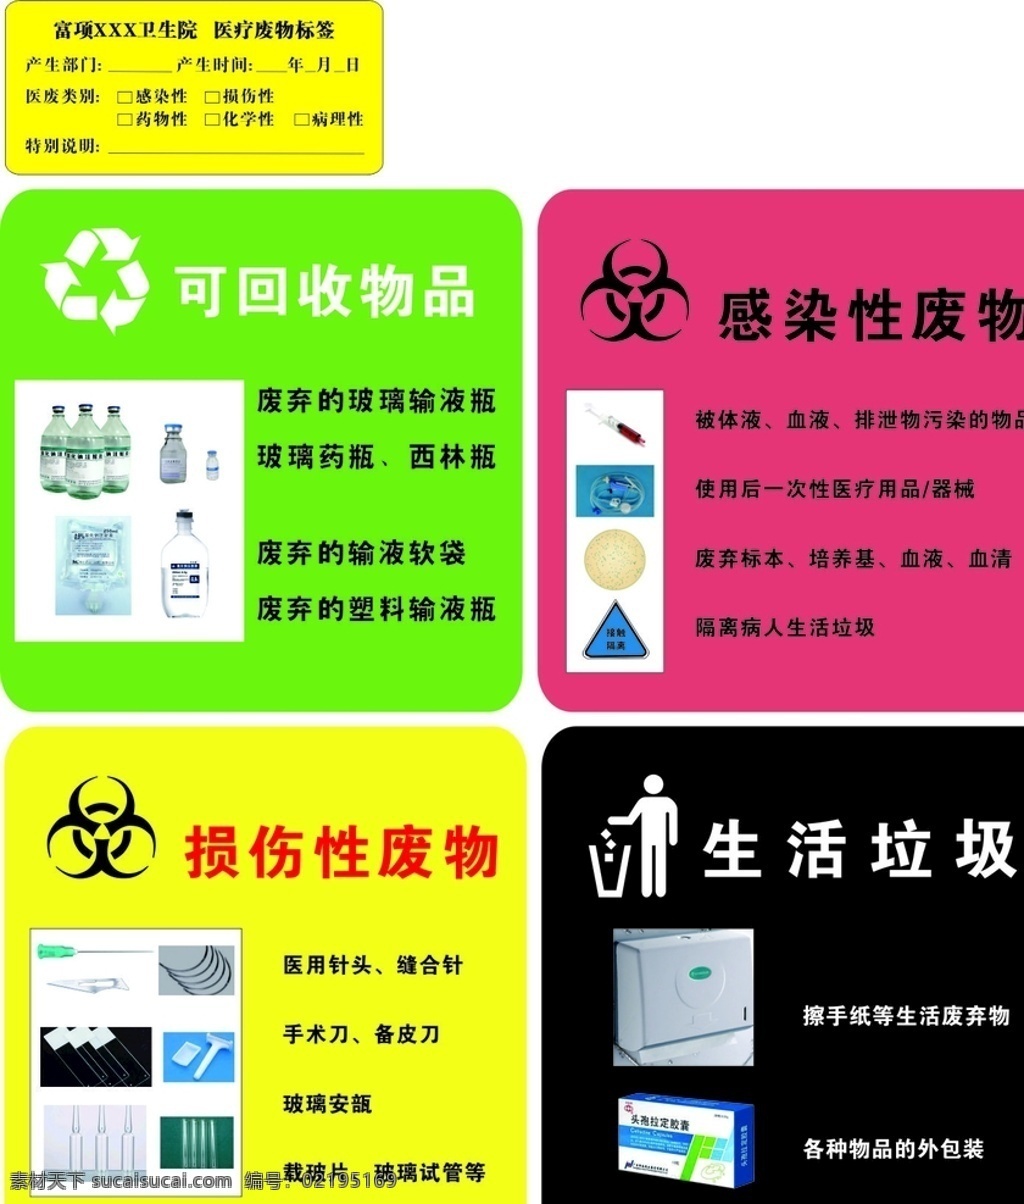 垃圾贴 分类 可回收物 厨余垃圾 有害垃圾 标志图标 公共标识标志